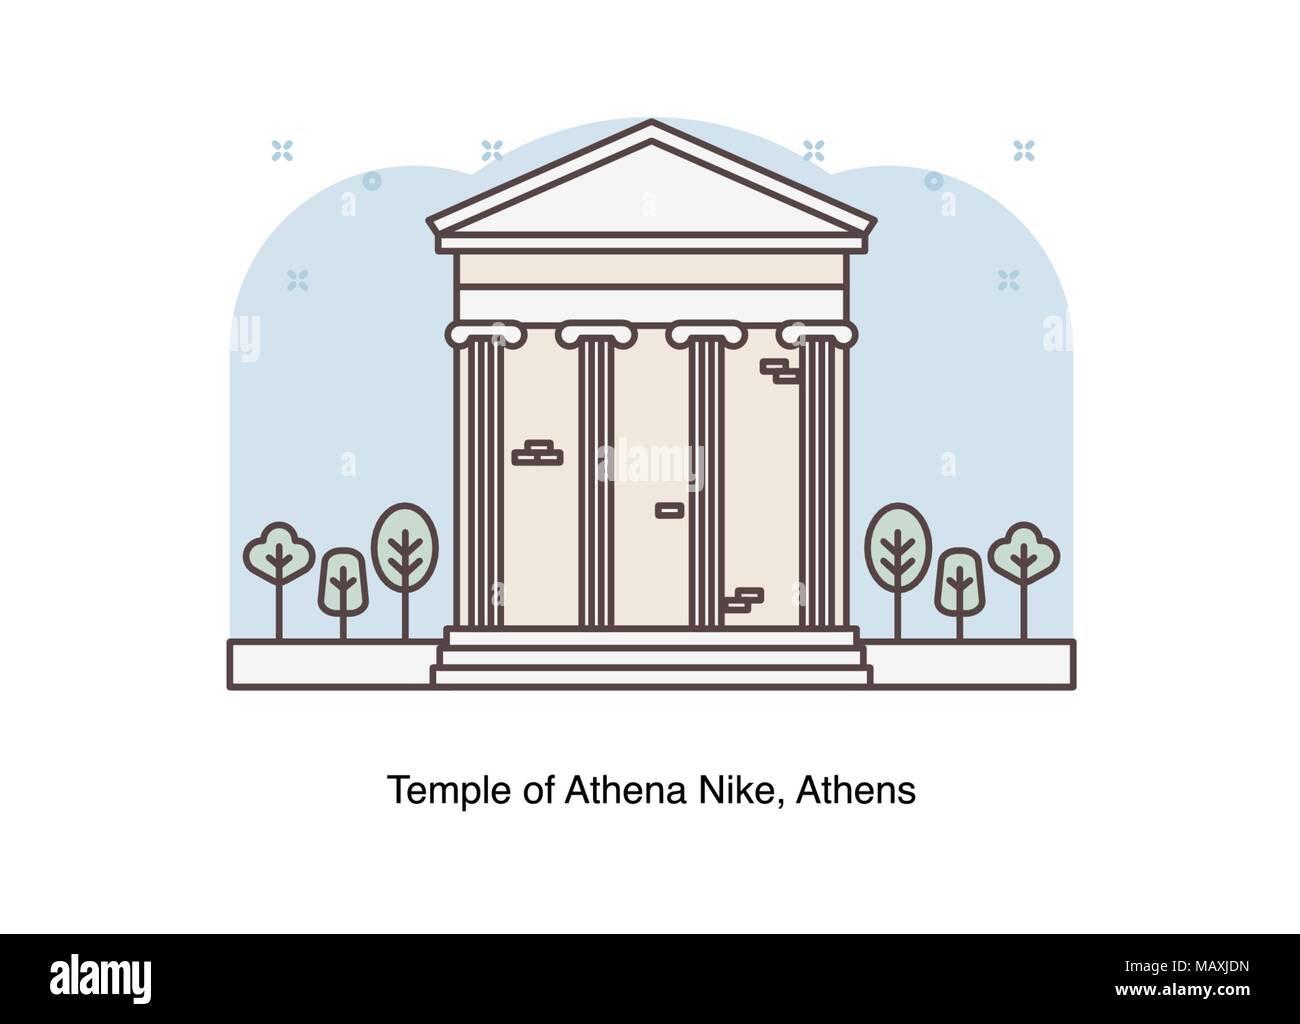 Vektor linie Abbildung der Tempel der Athena Nike, Athen, Griechenland. Stock Vektor